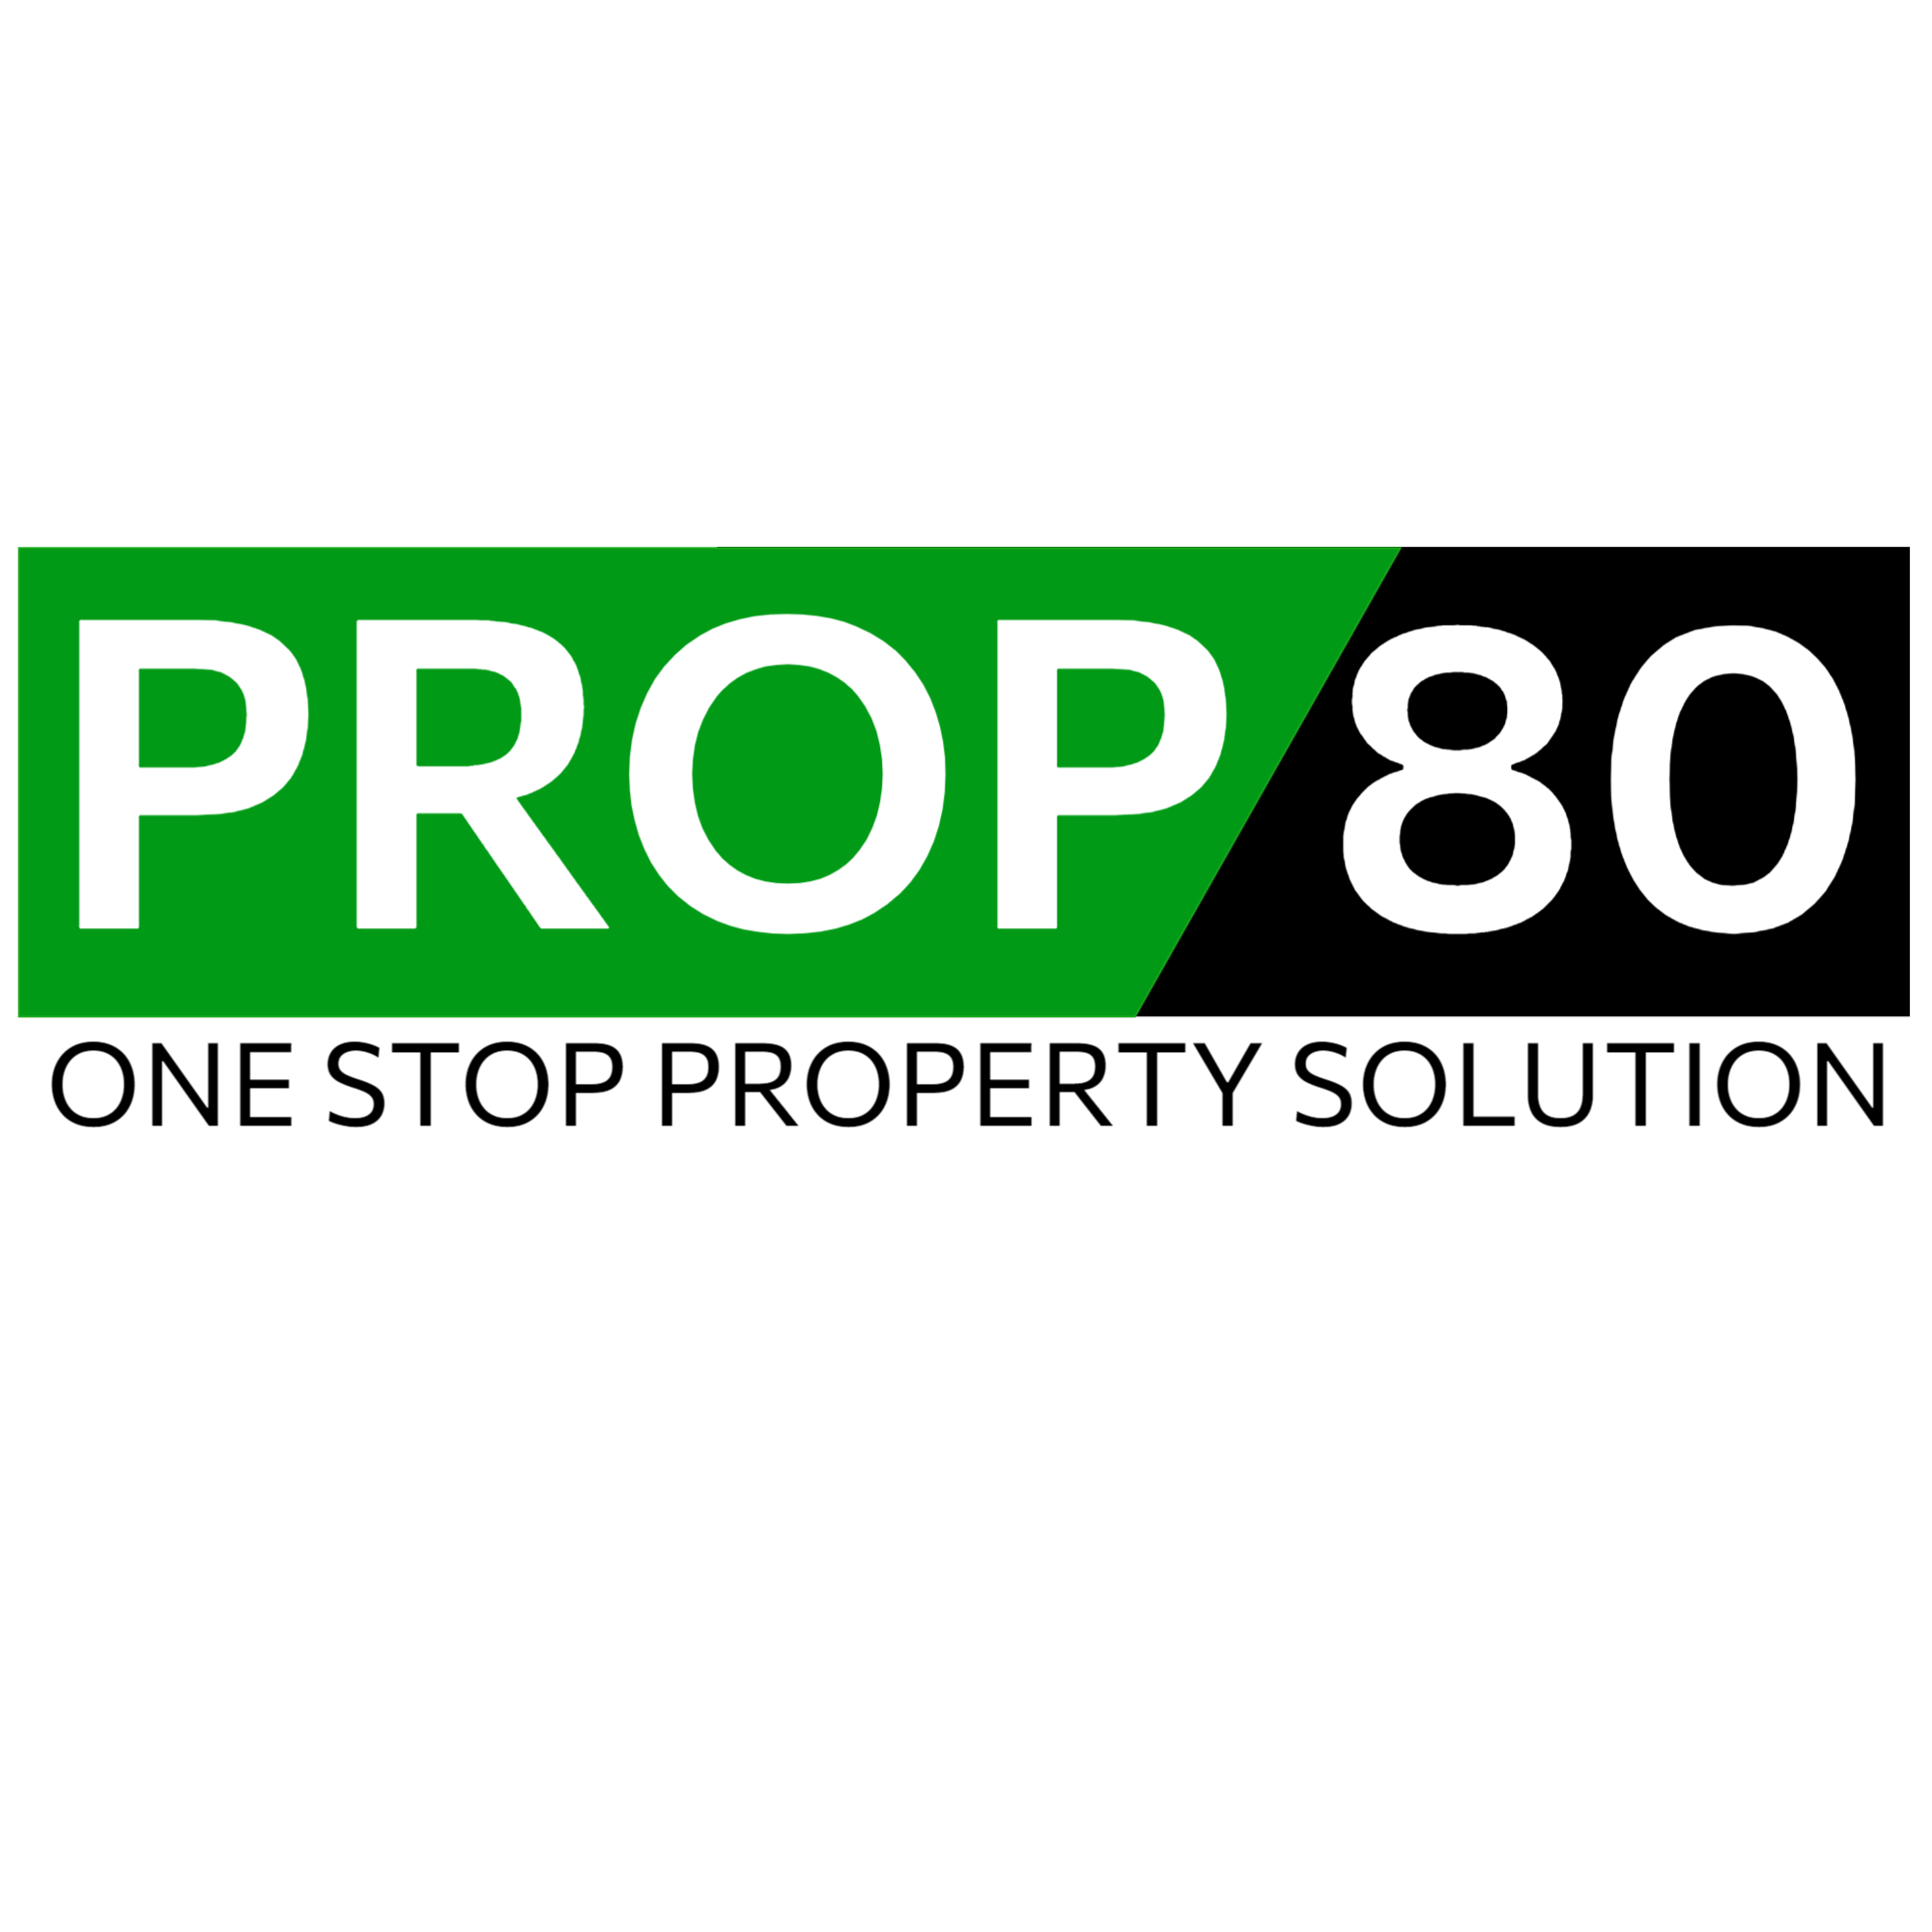 Prop80